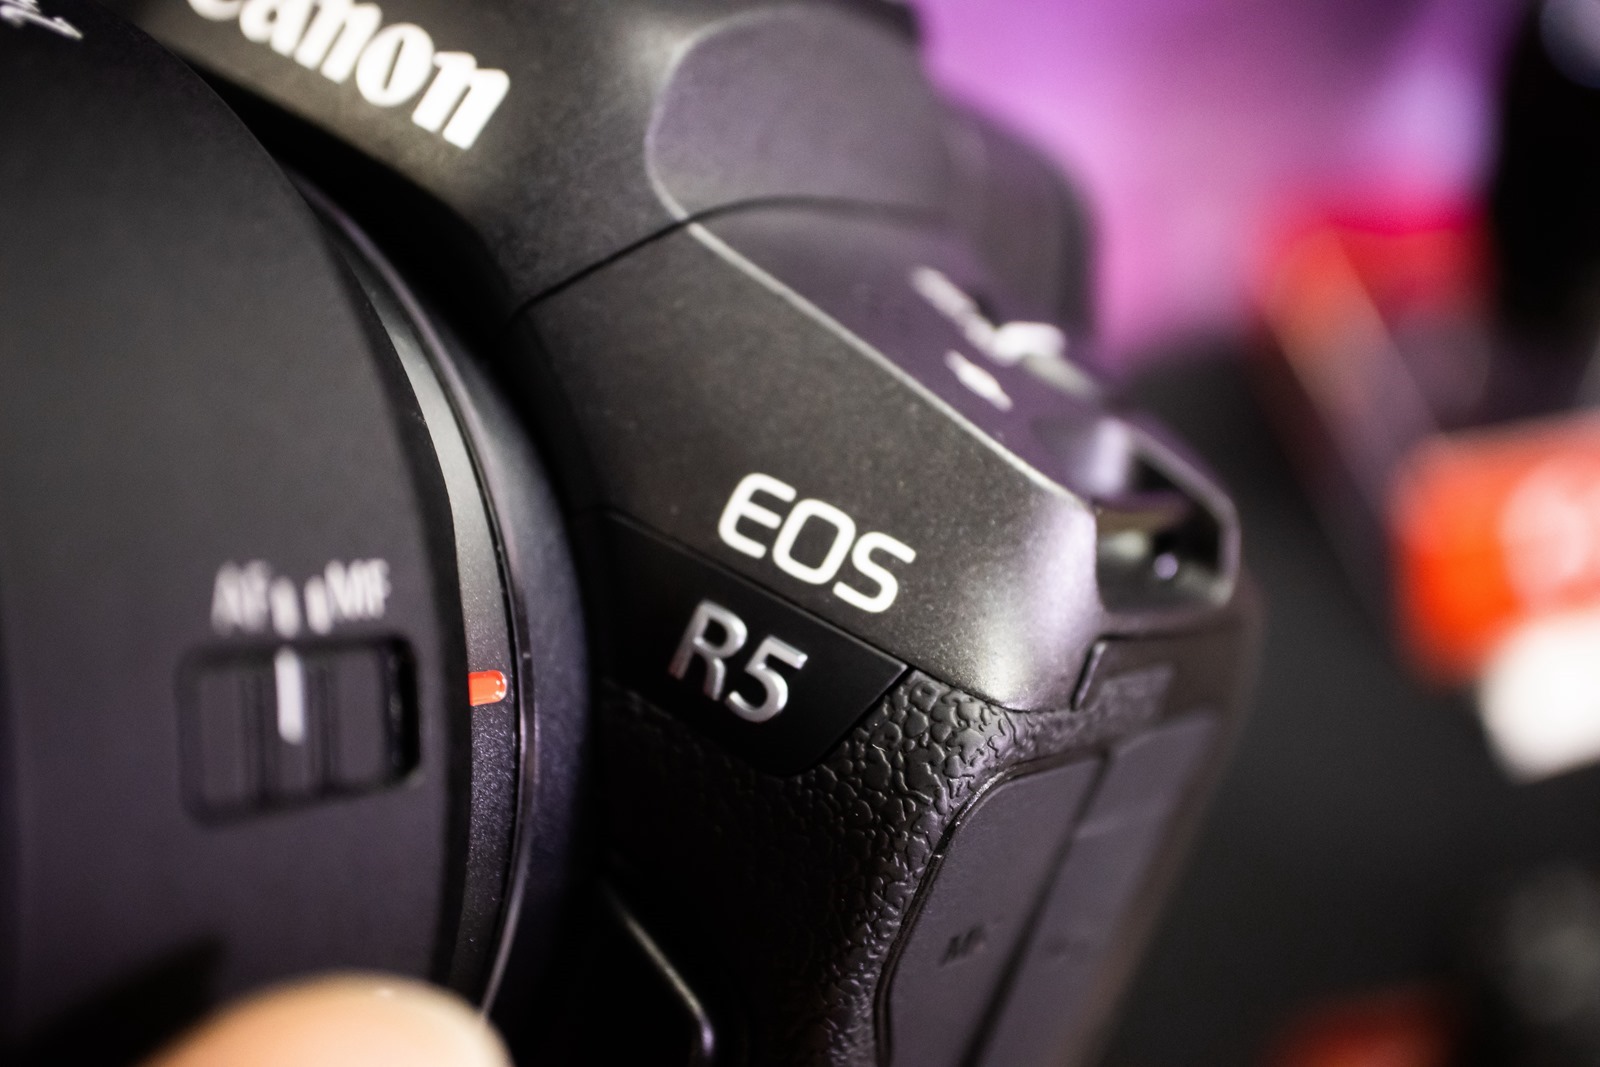 Canon 全球亮相 新一代全片幅無反光鏡單眼 EOS R5 與 EOS R6 與四款 RF 鏡頭 / 兩款 RF 增距鏡 @3C 達人廖阿輝